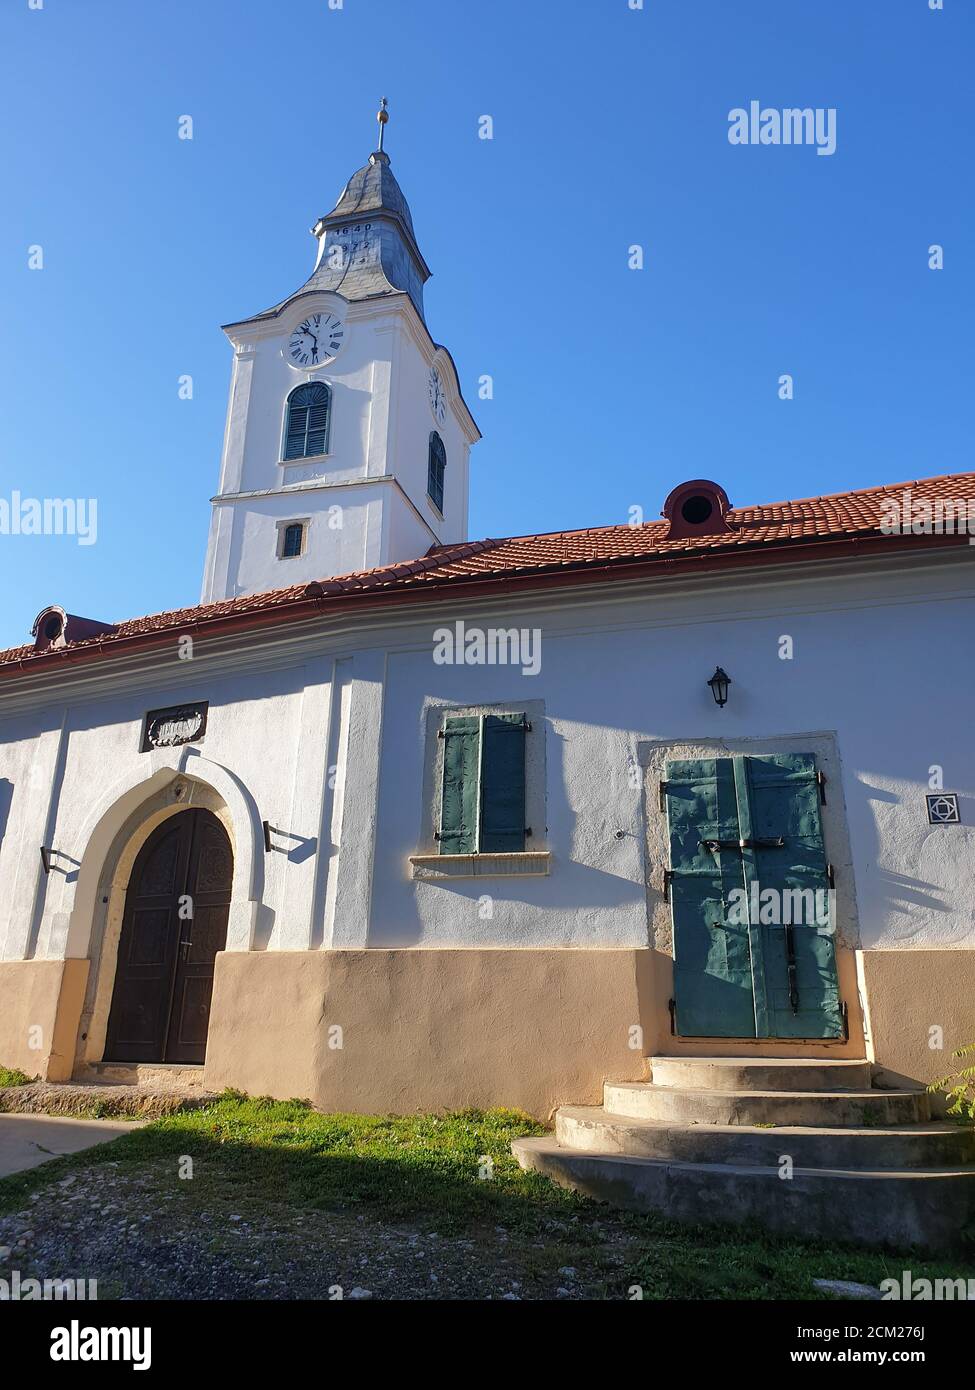 Closed metallic window shutters and gate in Rimetea, Romania. Architecture detail of unitarian church in the village of Rimetea, Torocko, Alba, Romani Stock Photo